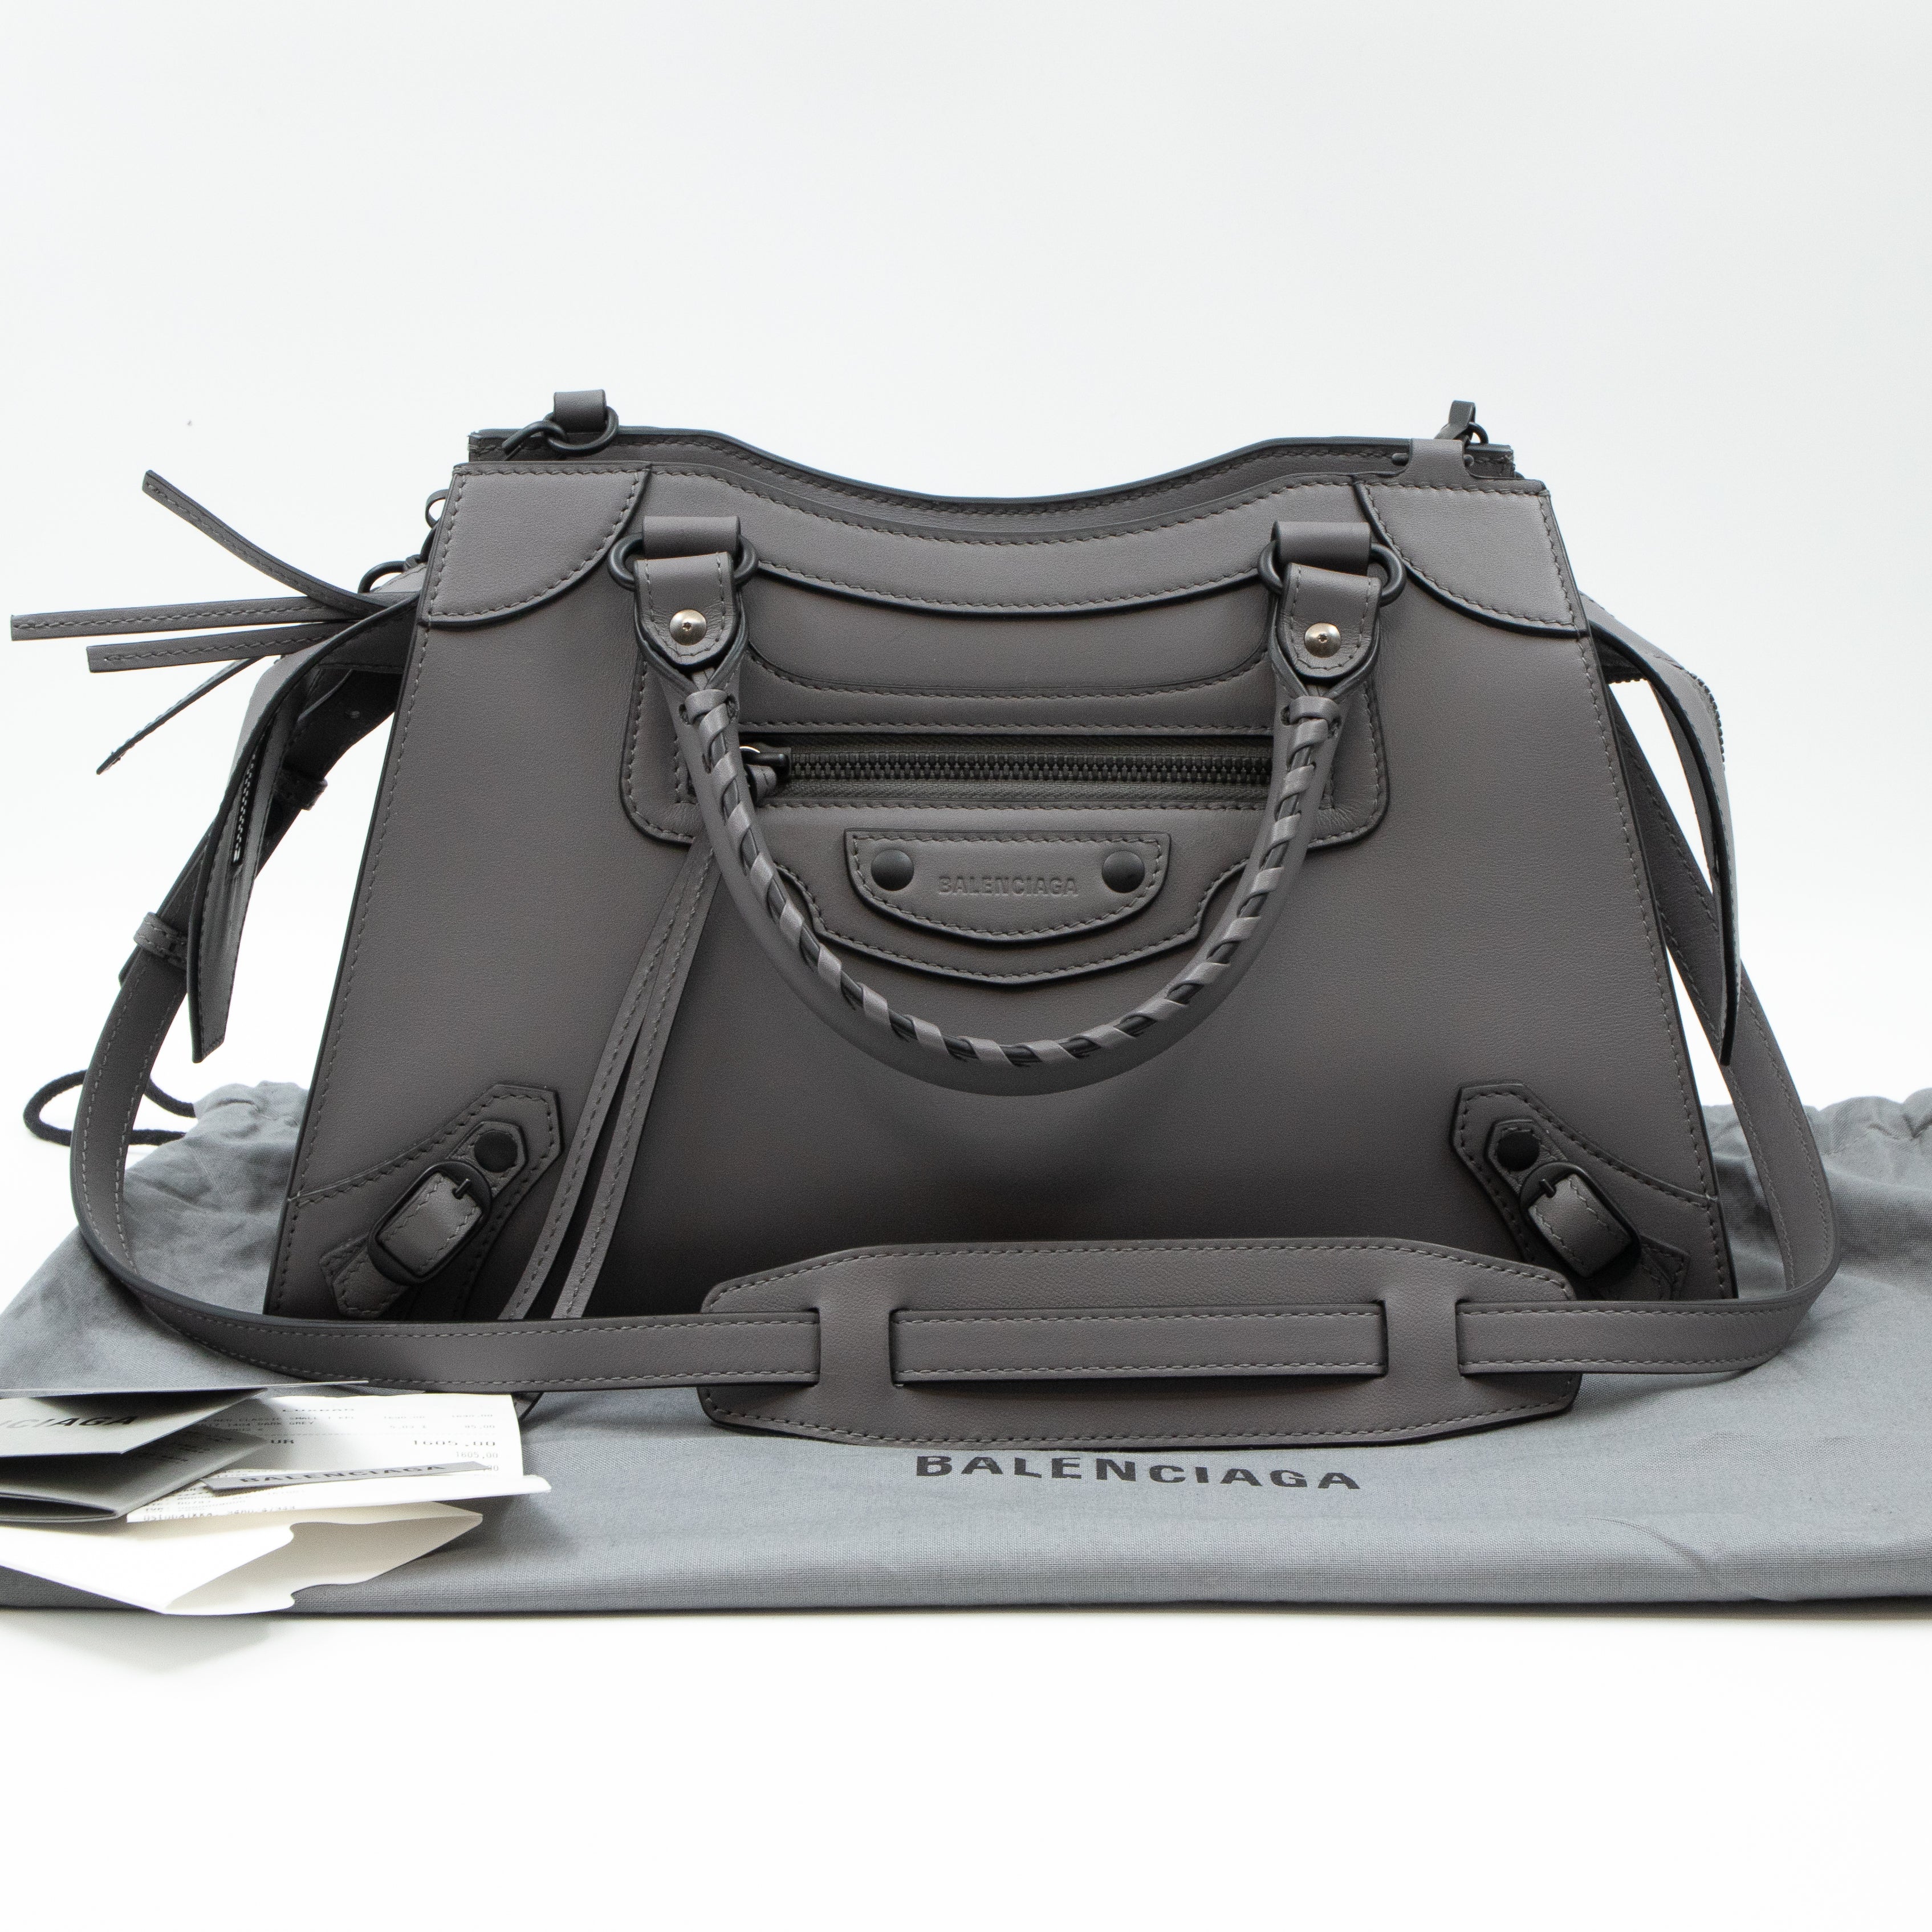 Balenciaga Balenciaga City Small Bags  Handbags for Women  Authenticity  Guaranteed  eBay